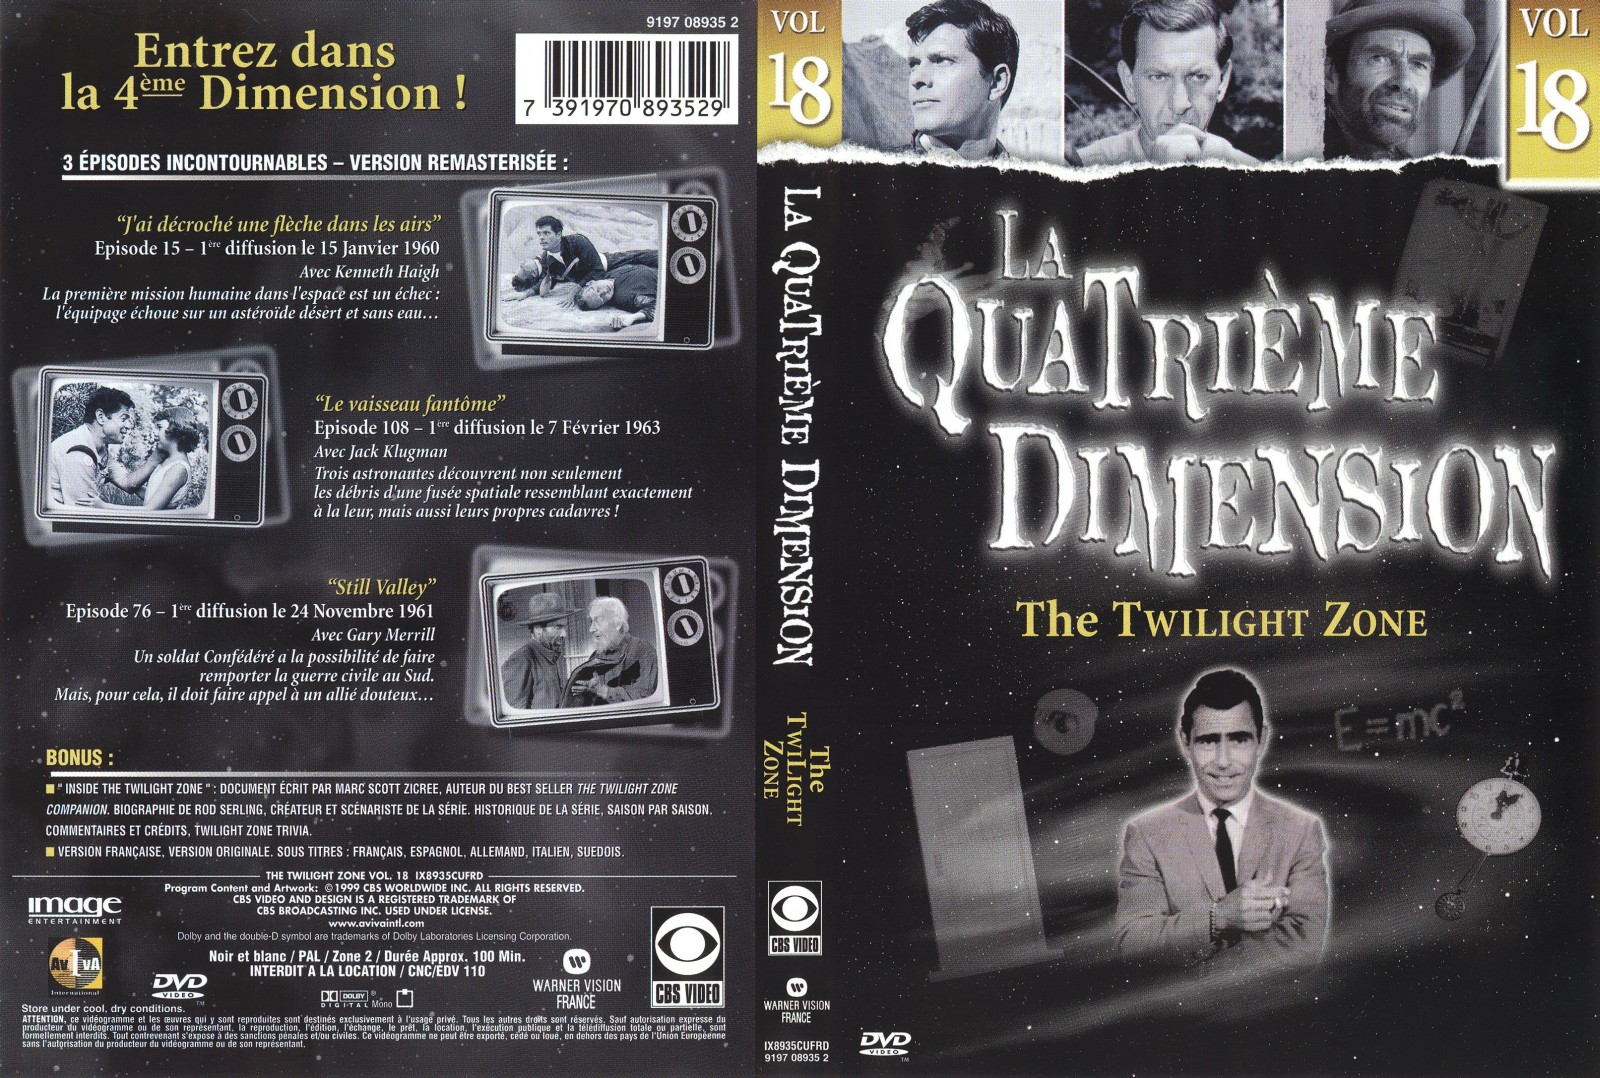 Jaquette DVD La quatrieme dimension vol 18